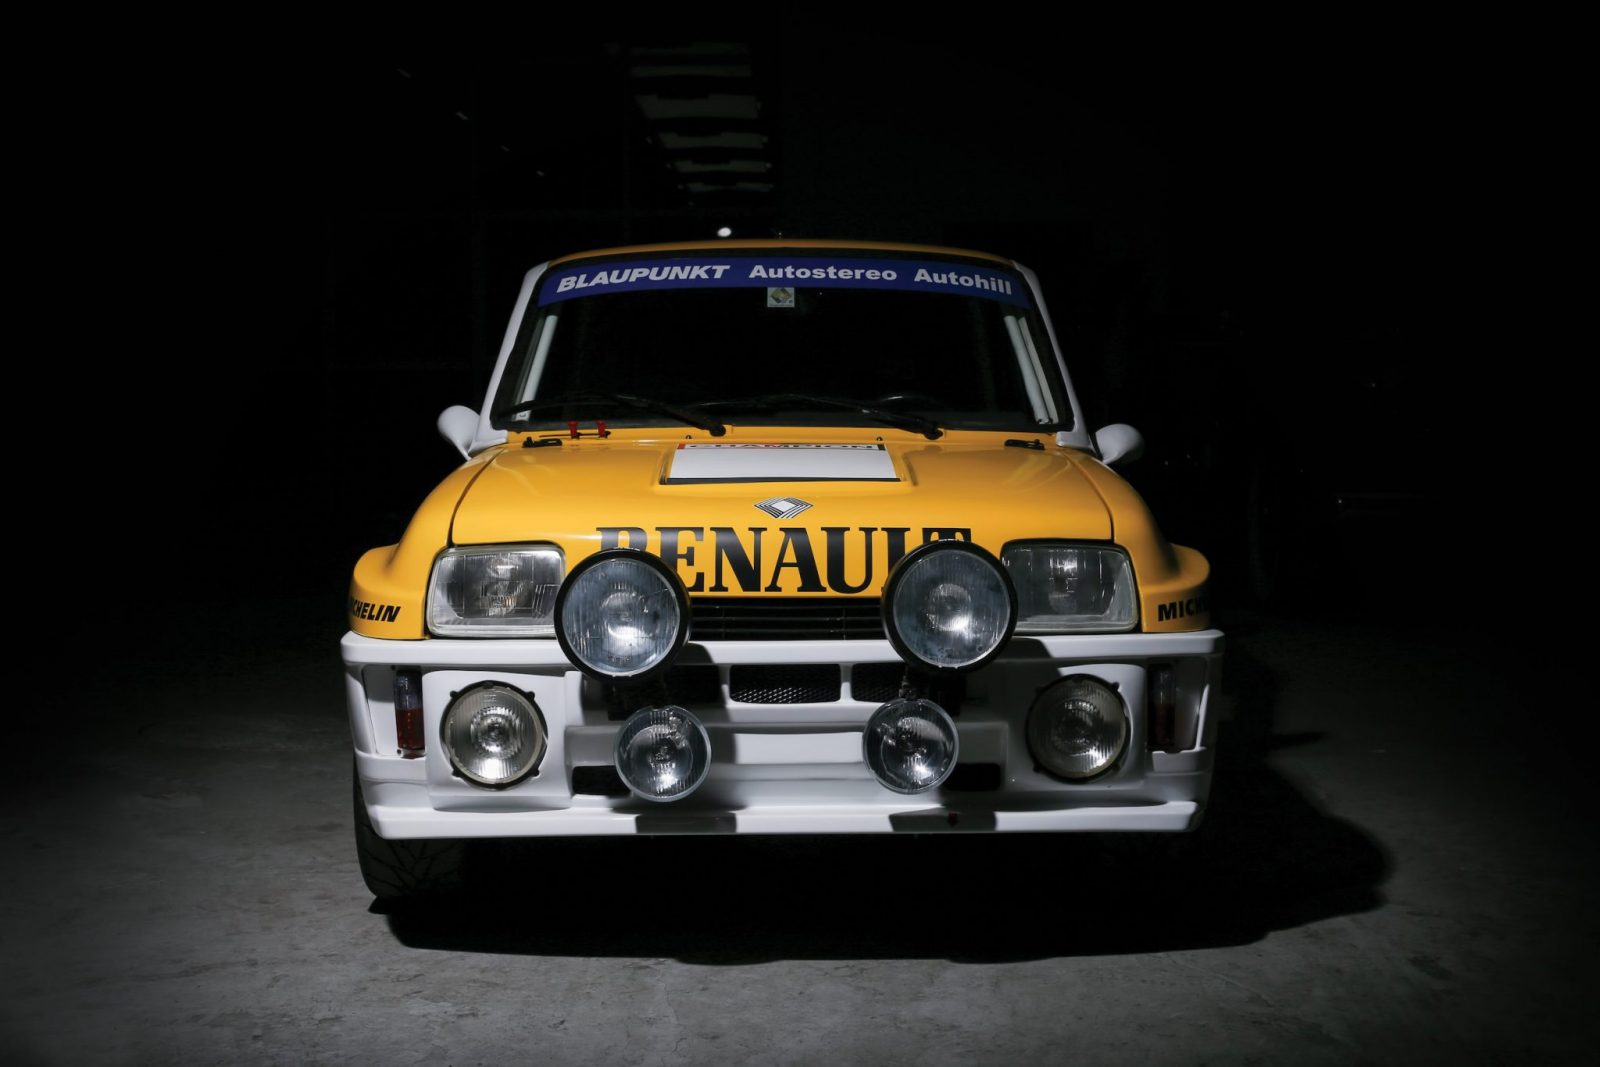 La Renault 5 Turbo, la petite voiture qui a marqué une génération